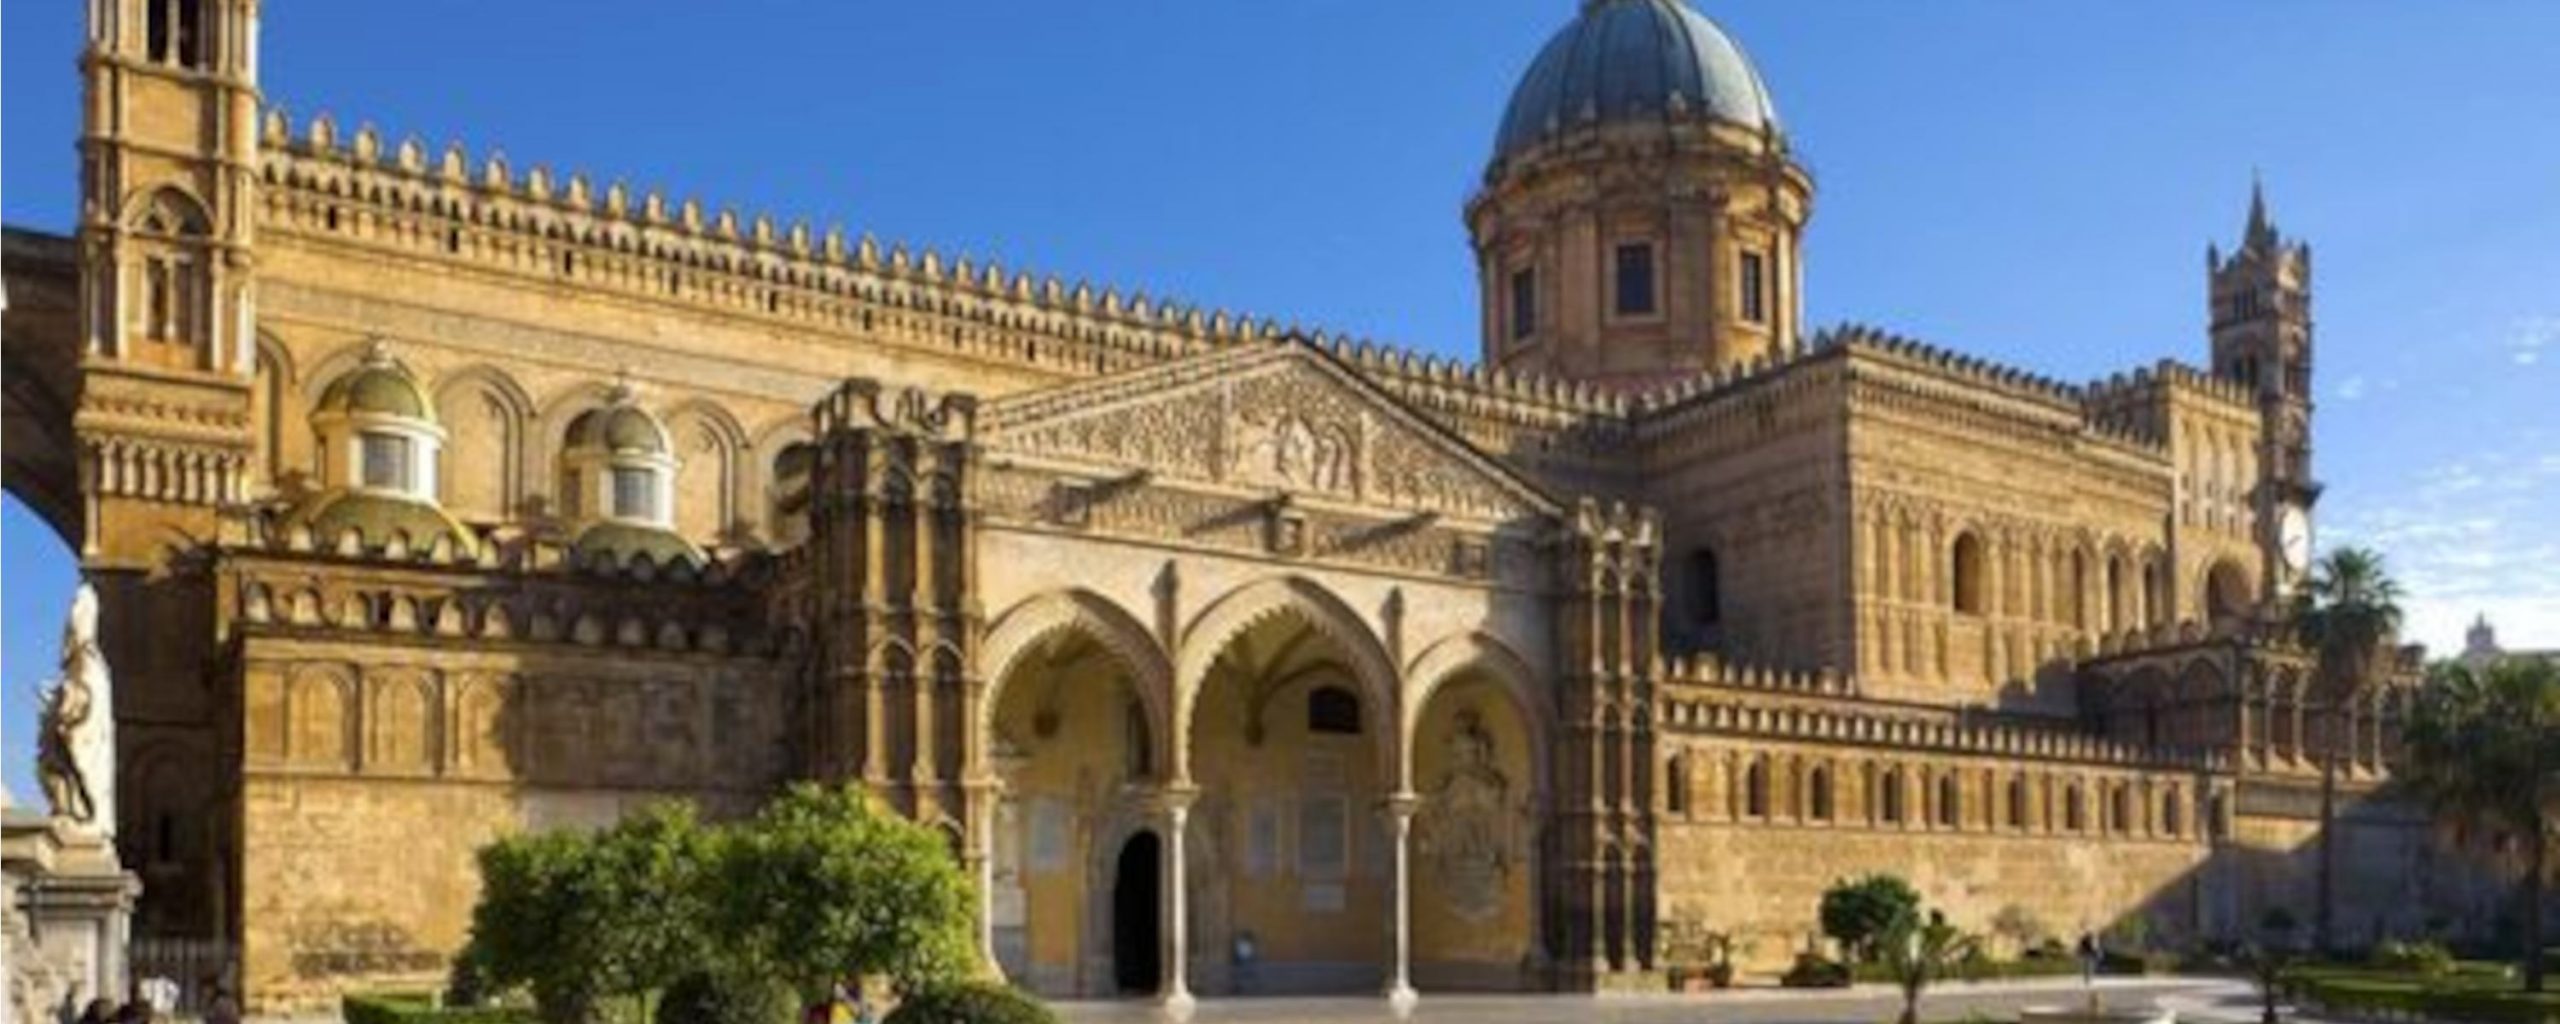 Palermo: cosa vedere in 3 giorni